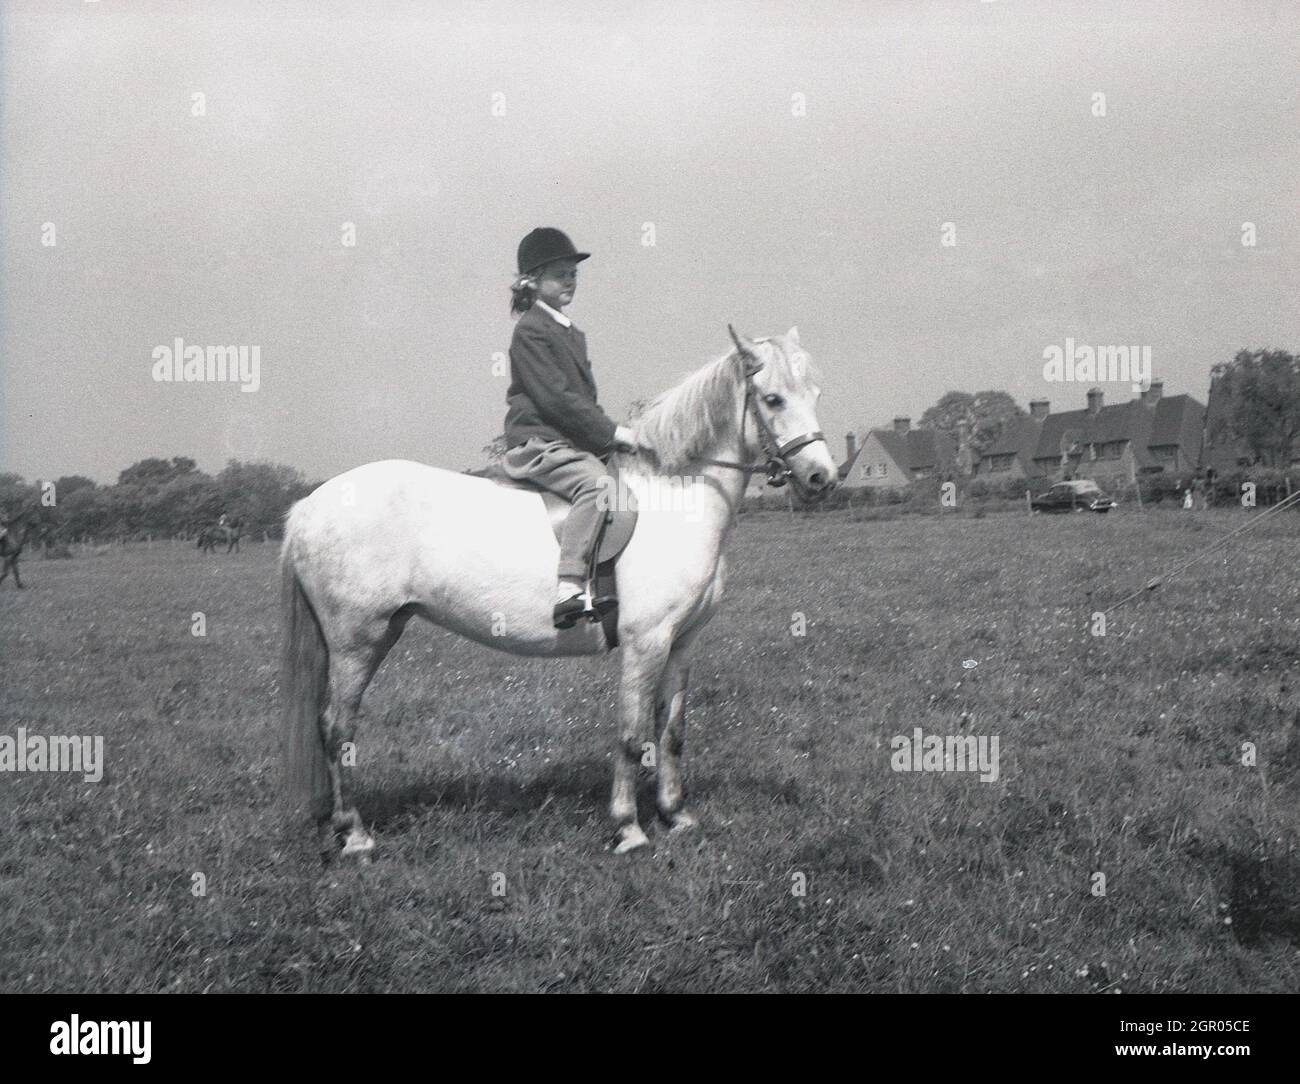 In den 1950er Jahren, historisch, draußen auf einem großen, offenen Feld, sitzt eine junge Reiterin auf ihrem Pferd bei einem Wettkampfwettbewerb, Sussex, England, Großbritannien. Stockfoto